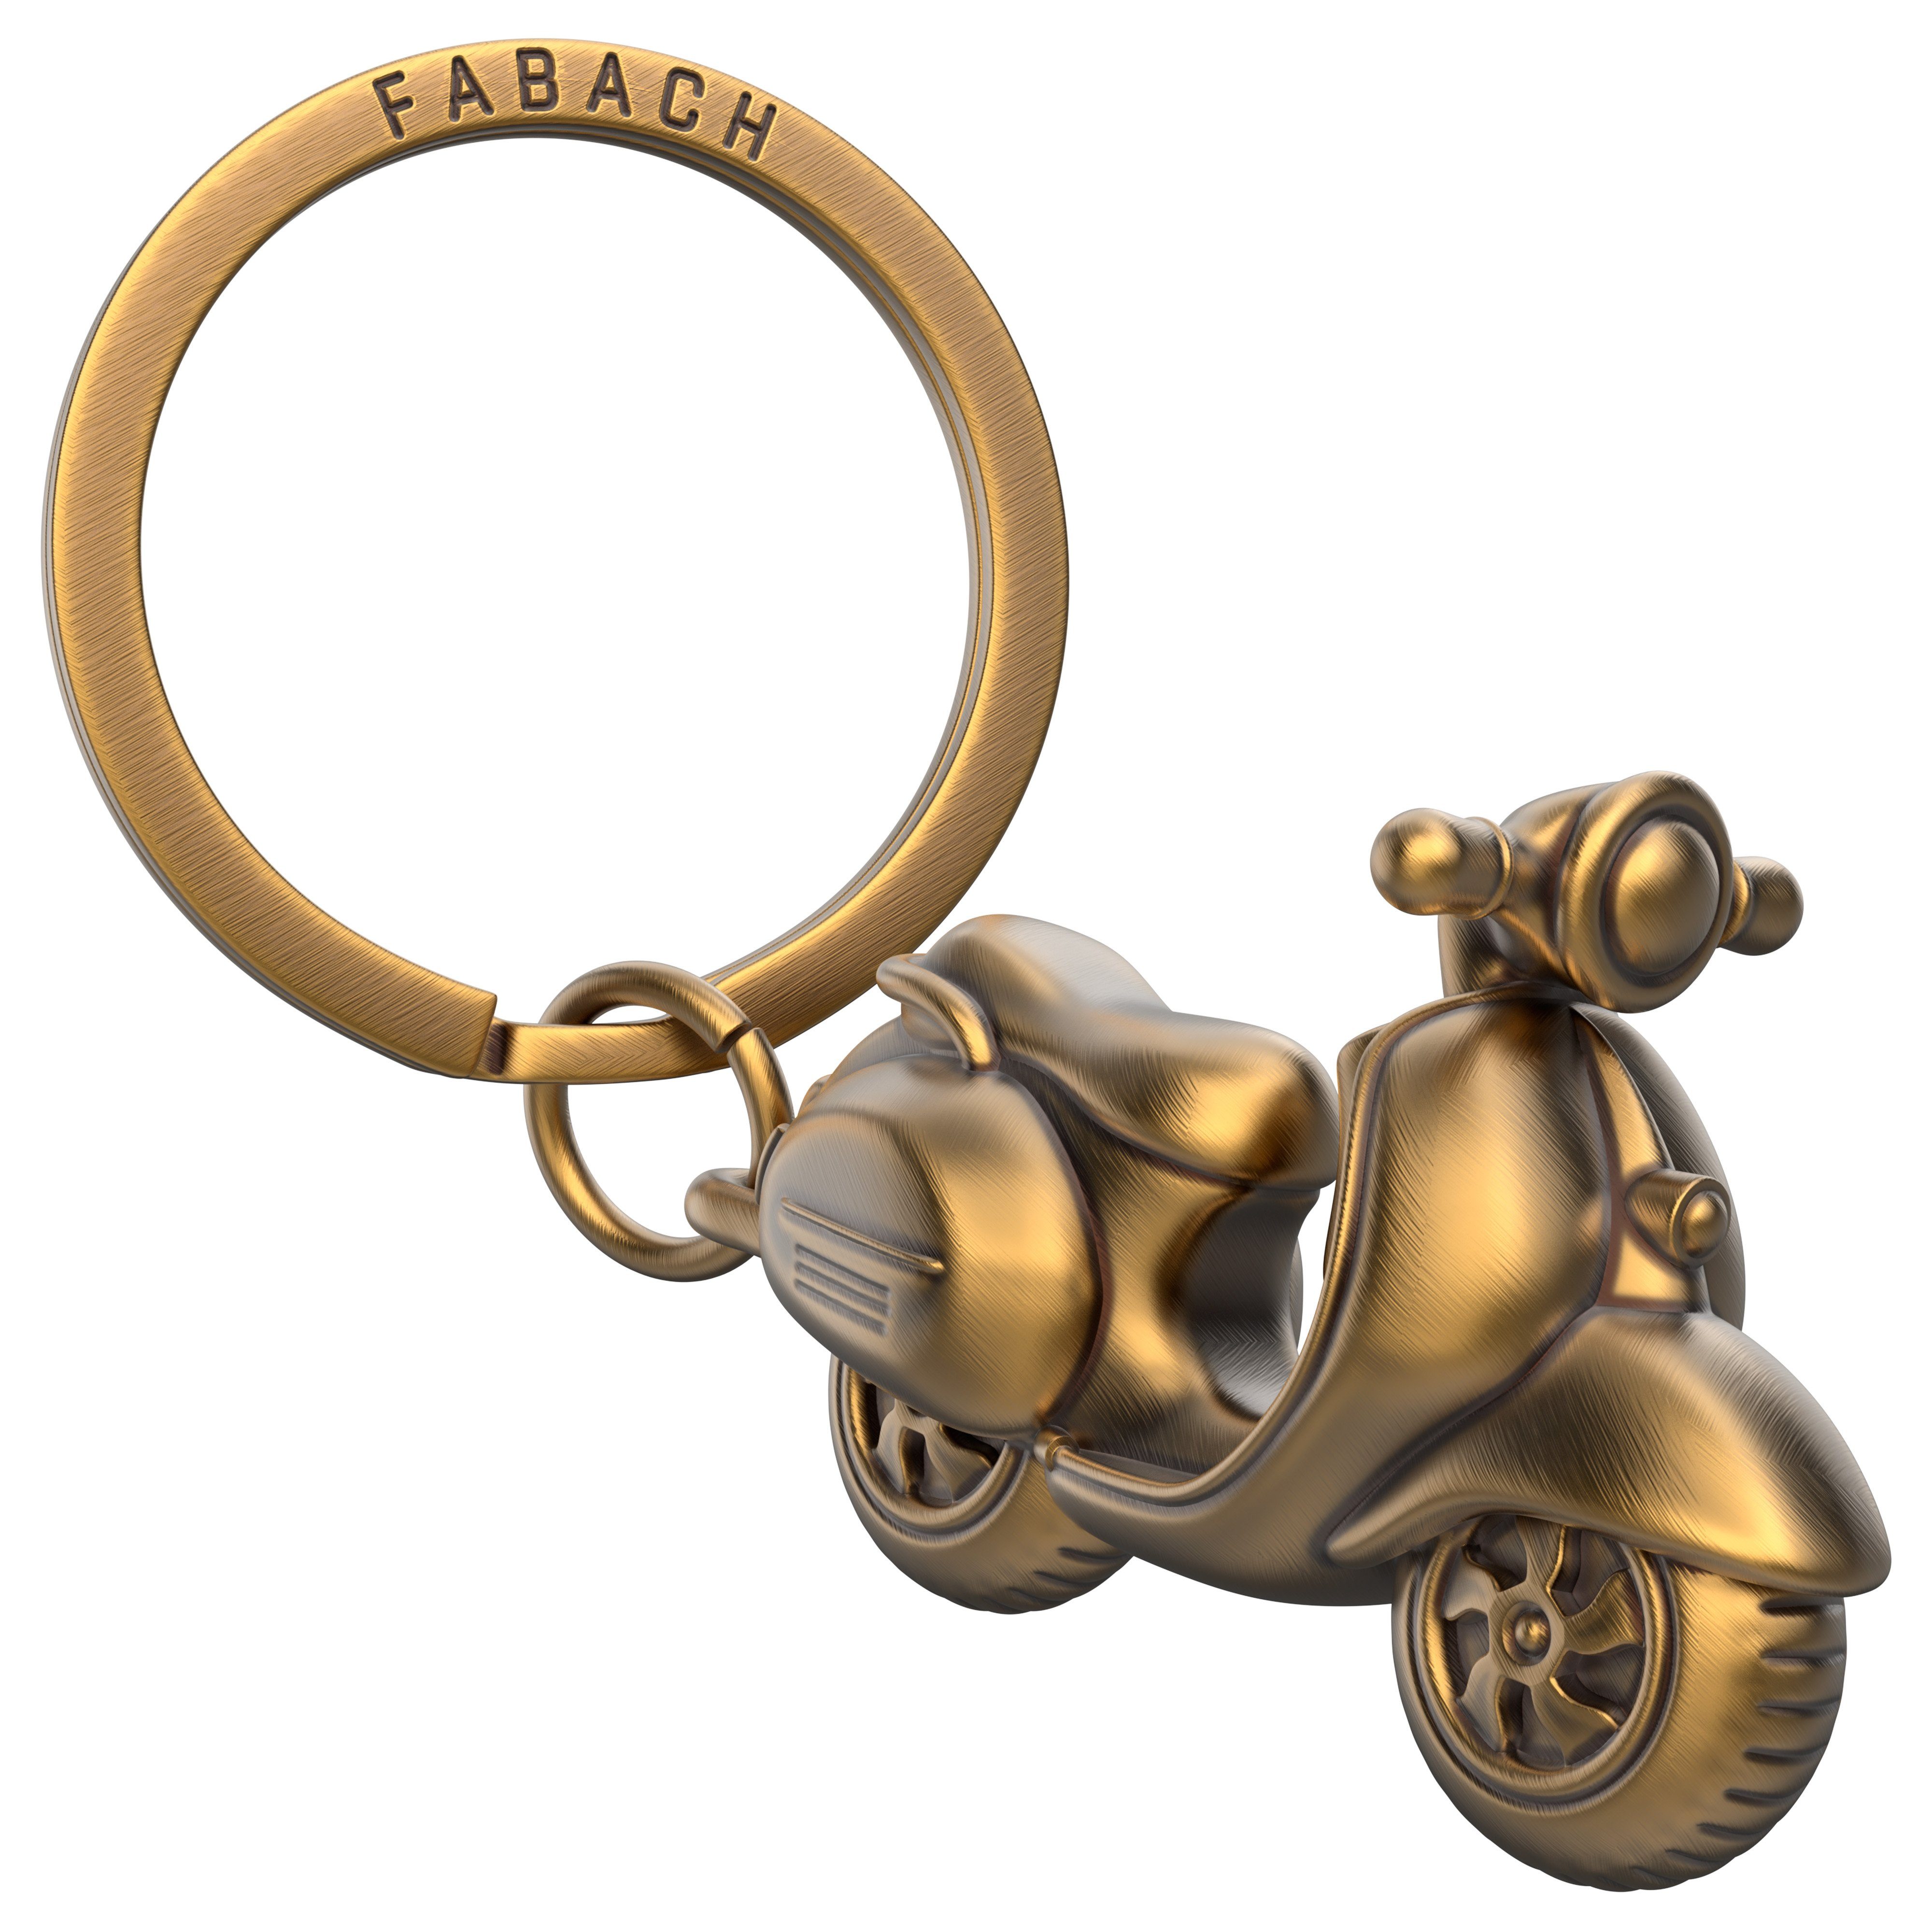 Schlüsselanhänger Rollerfahrer - für FABACH Vespa "Vespa" Bronze und Antique Fans Geschenk